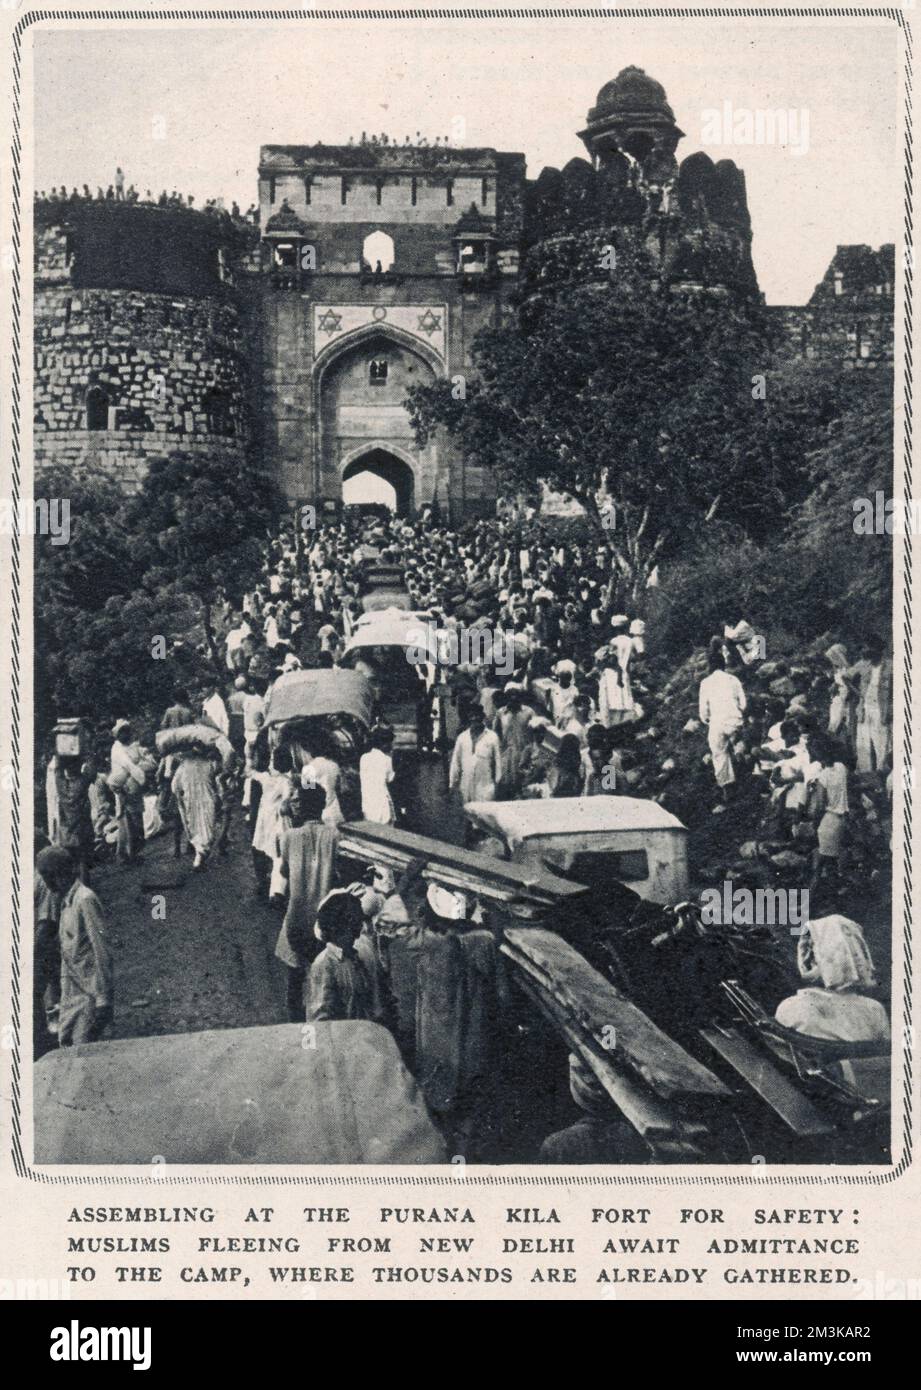 Indische Moslems, die aus Neu-Delhi fliehen, warten auf den Zutritt zum Purana Kila Fort 1947 Stockfoto